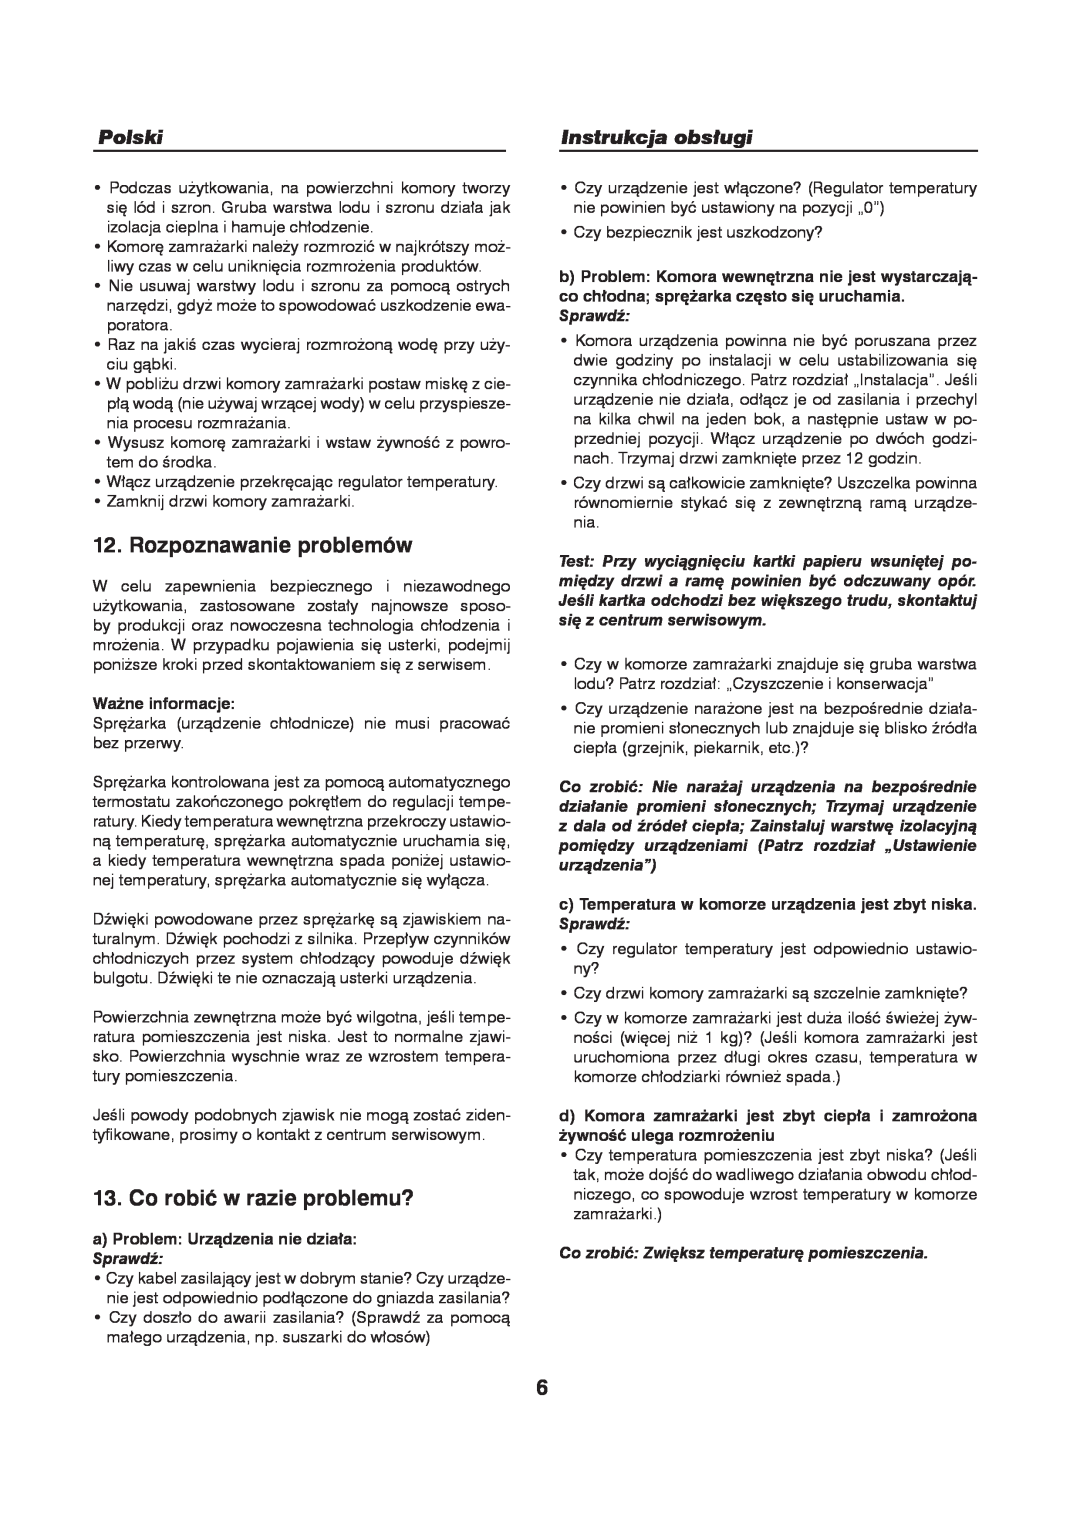 Haier HFN-248, HFN-136 manual Rozpoznawanie problemów, Co robić w razie problemu?, Polski, Instrukcja obsługi 